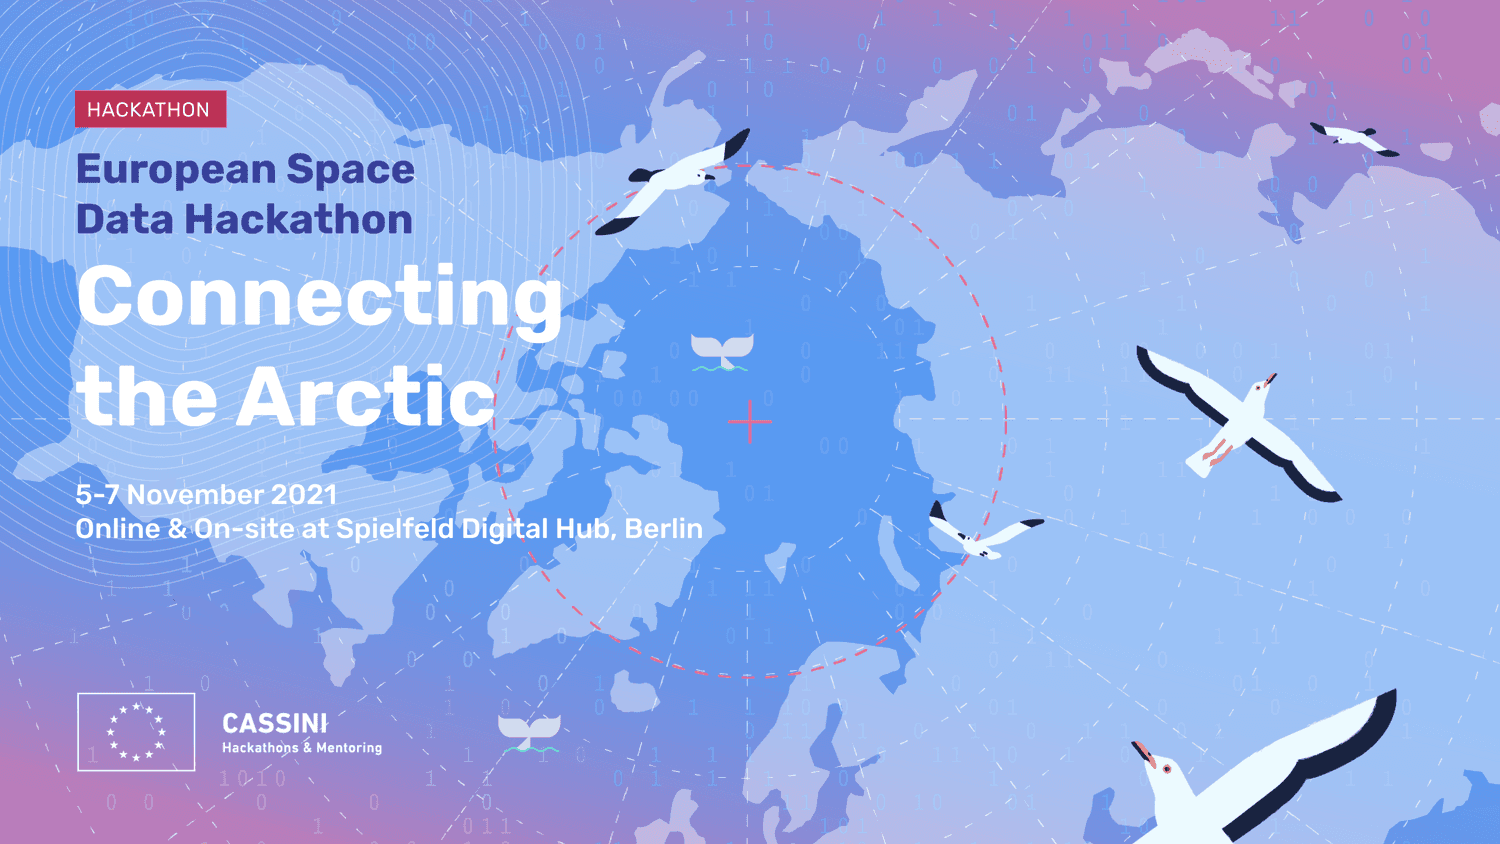 Das Bild zeigt eine geografisch gestaltete Weltkarte mit der Arktis im Zentrum - mit Piktogrammen von Vögeln, die darüber fliegen. Neben den visuellen Elementen ist der folgende Text auf dem Bild platziert: Hackathon, Europäischer Weltraumdaten-Hackathon. Connecting the Arctic. 5-7 Nov. 2021. Online & im Spielfeld Digital Hub, Berlin.